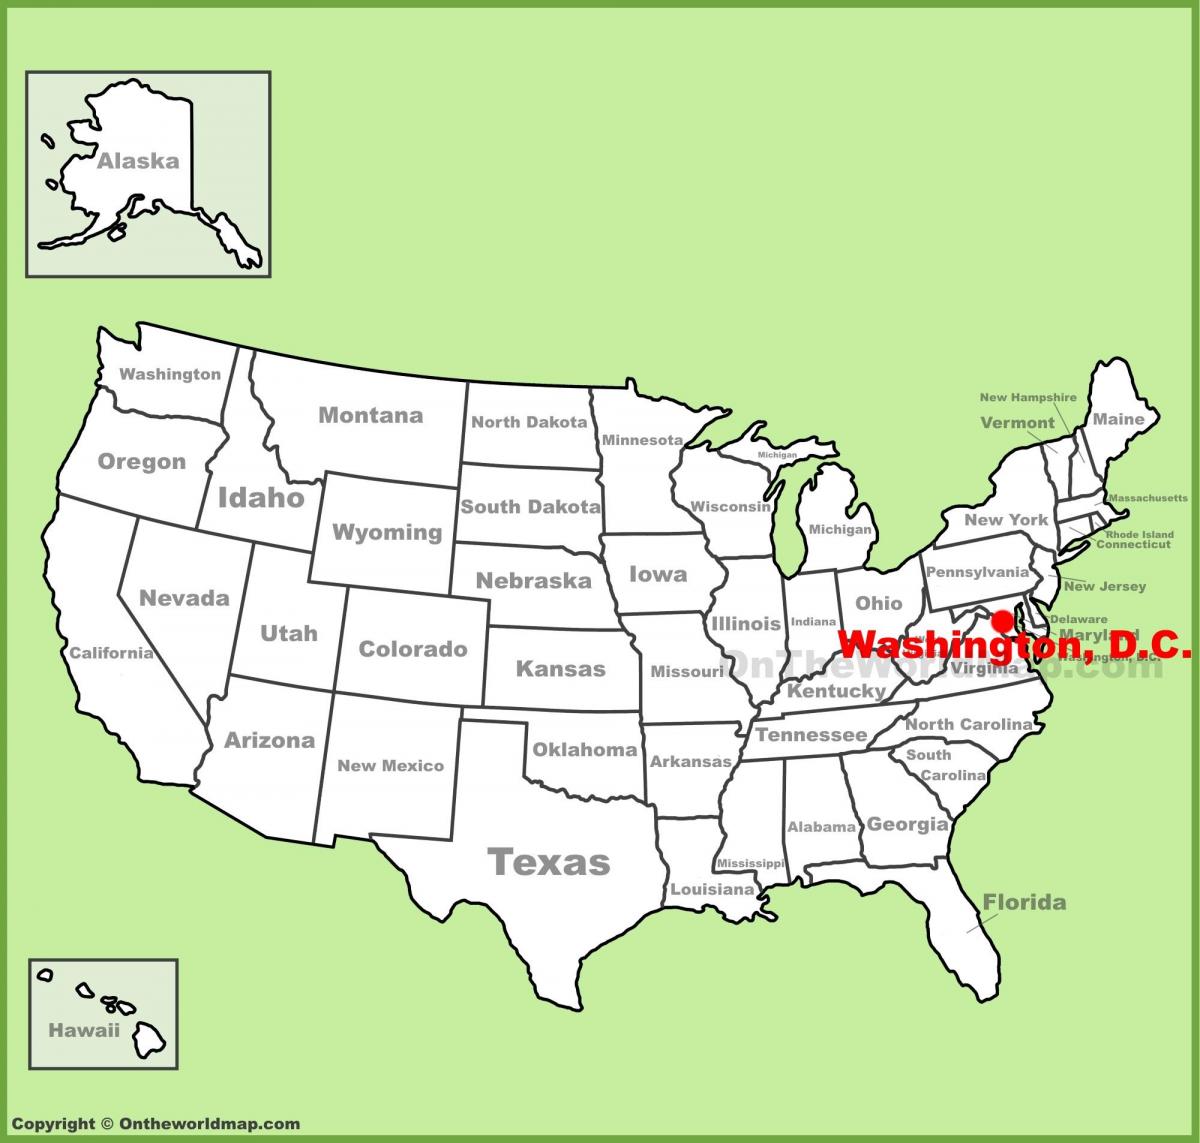 वाशिंगटन डीसी स्थित है, संयुक्त राज्य अमेरिका नक्शा